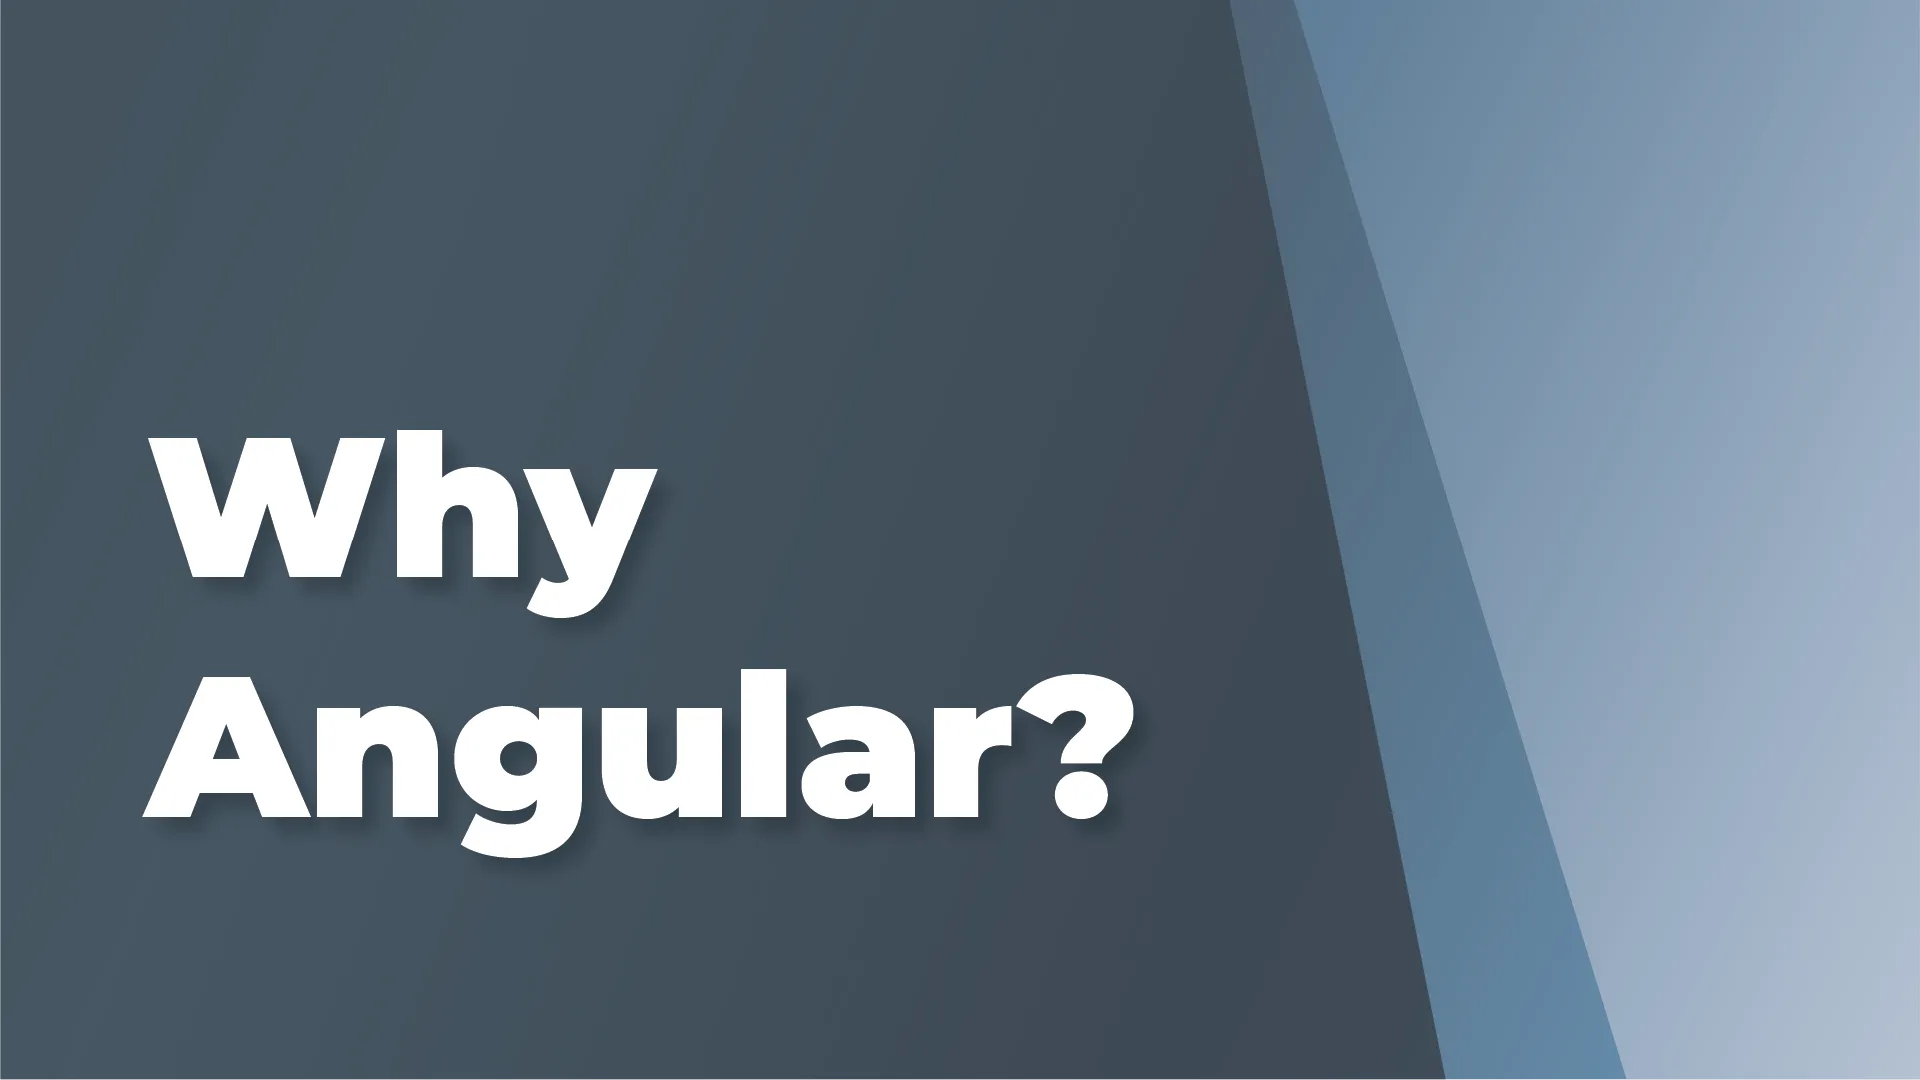 Why Angular?